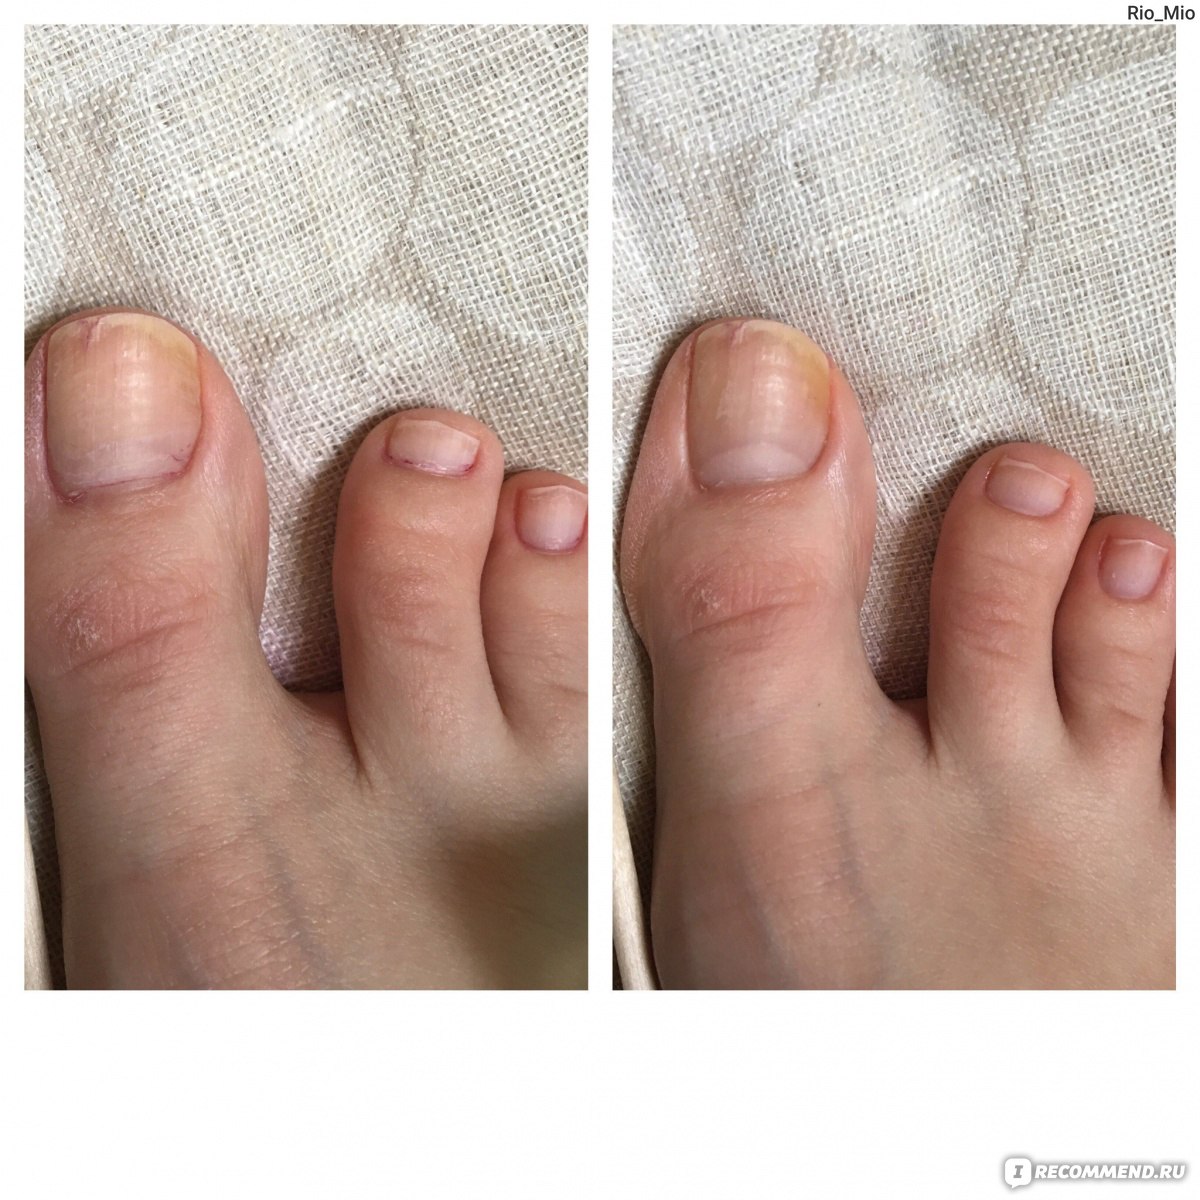 Педикюр до и после. Женский педикюр до и после. Педикюр без покрытия до и после. Педикюр на проблемных ногтях.